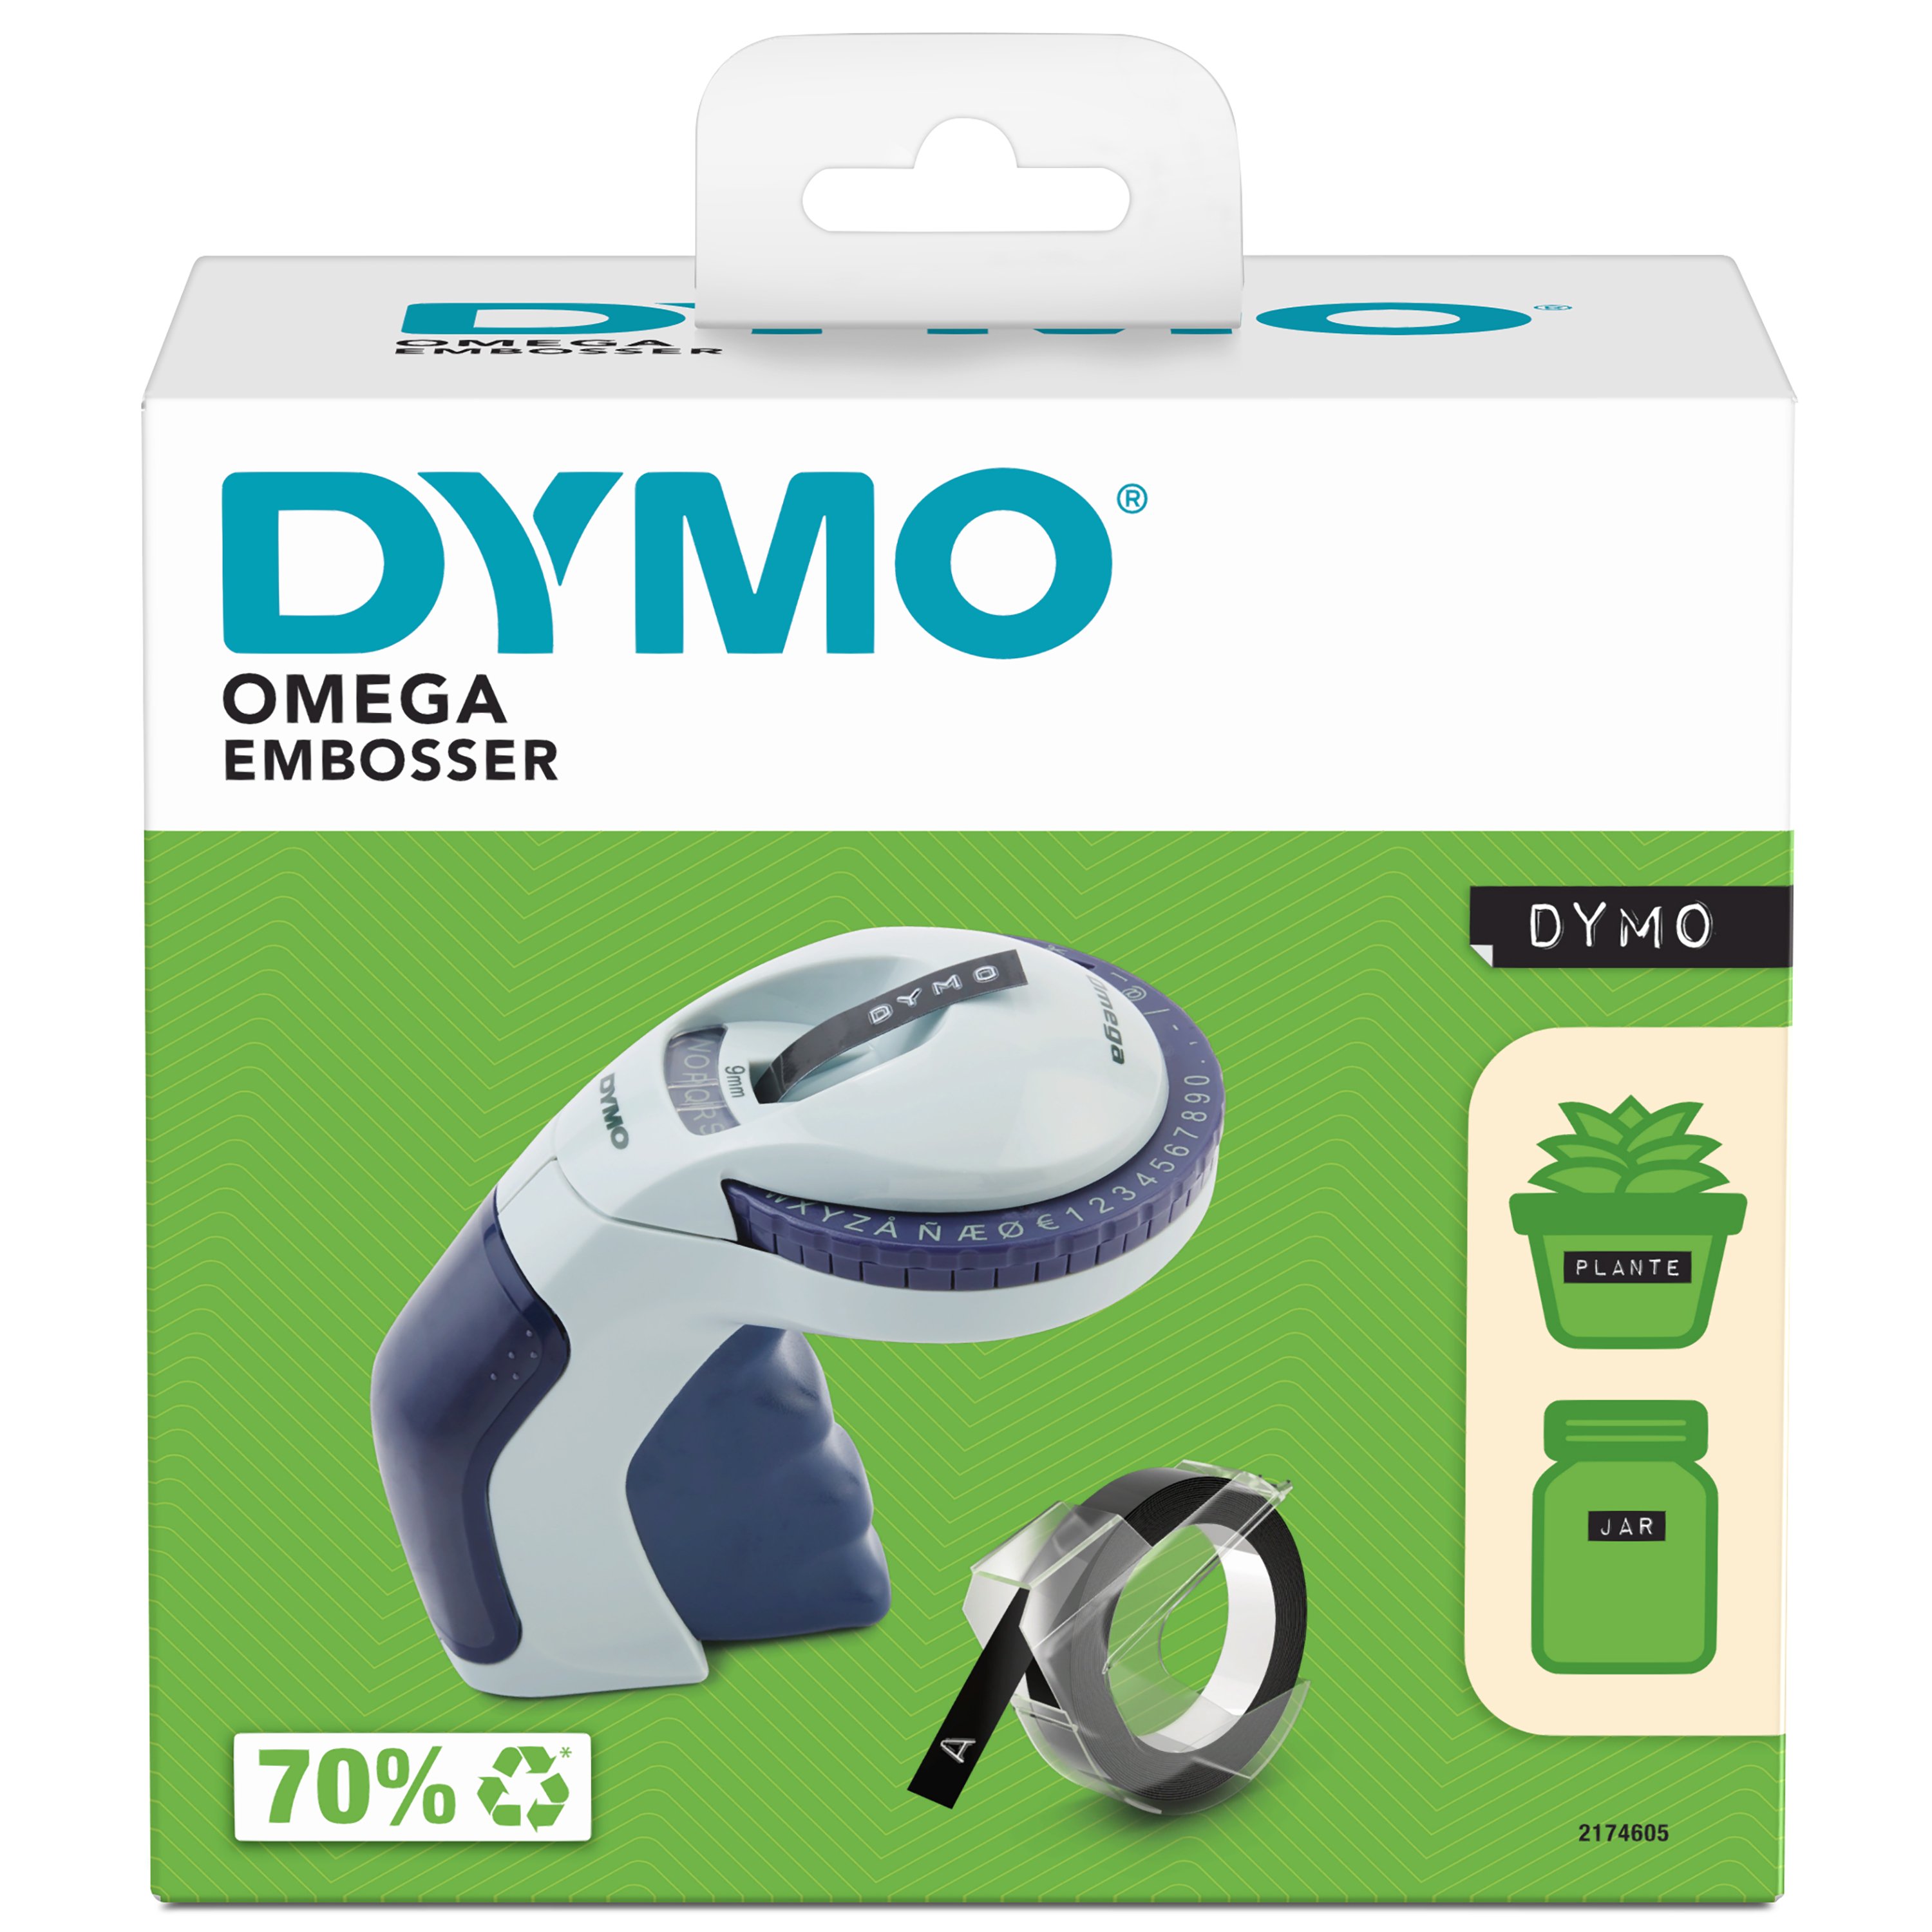 DYMO - Omega Home Embossing Label Maker DK/NO (2174605) - Kontor og skoleutstyr